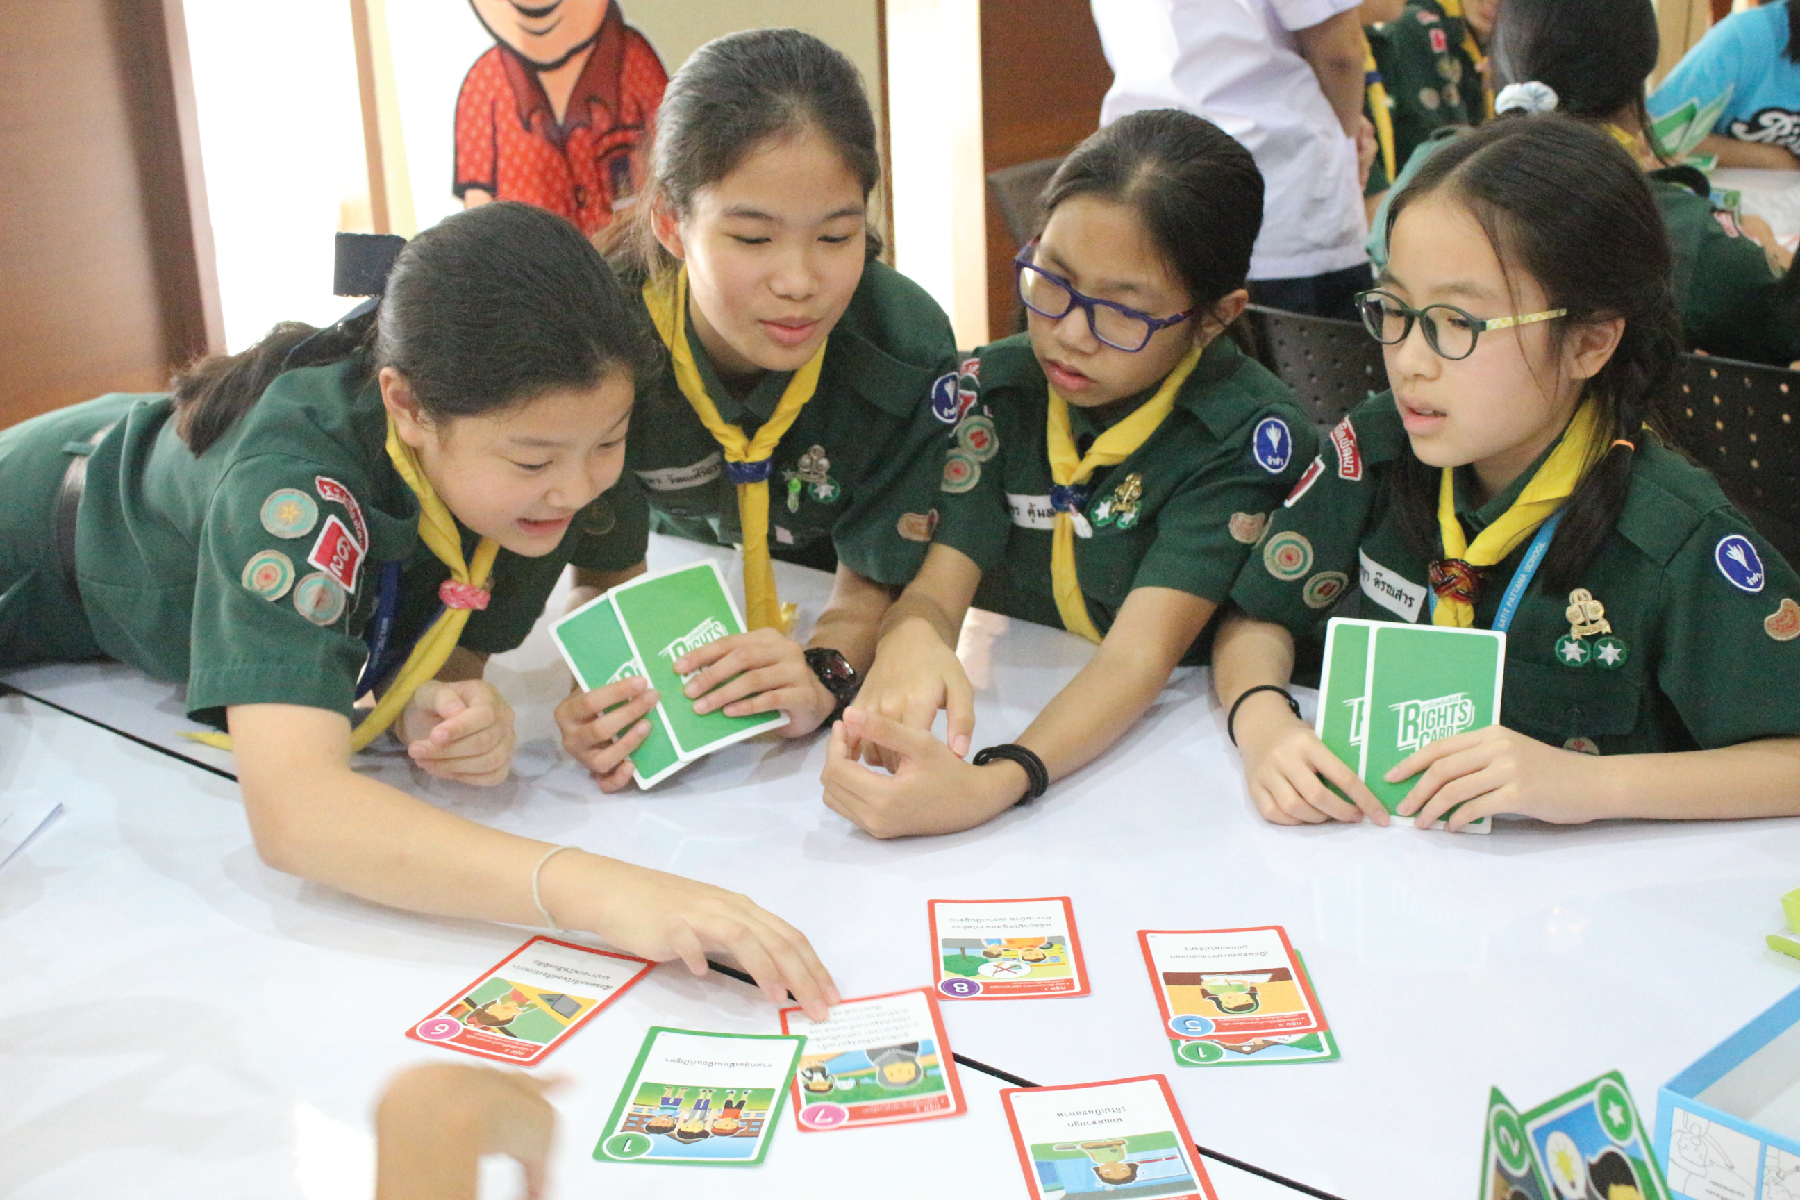 Das „Human Rights Card Game“ im Einsatz an der Satit Pattana Schule in Bangkok.